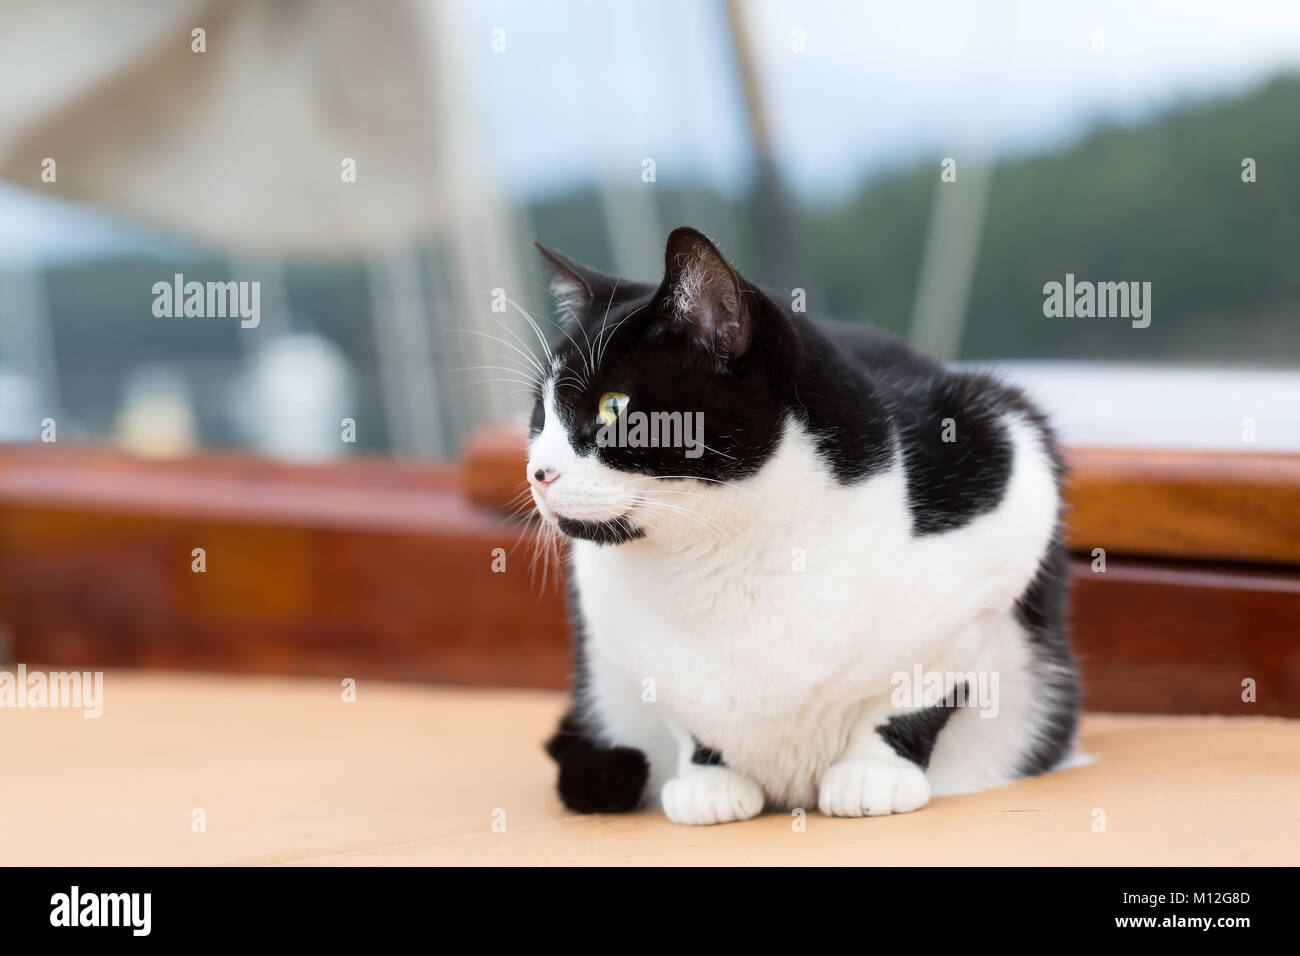 Die Katze auf dem Segelboot. Close Up, selektive konzentrieren. Traditionelle Schiff Katze leben auf dem Boot, Begleiter und mouser. Stockfoto